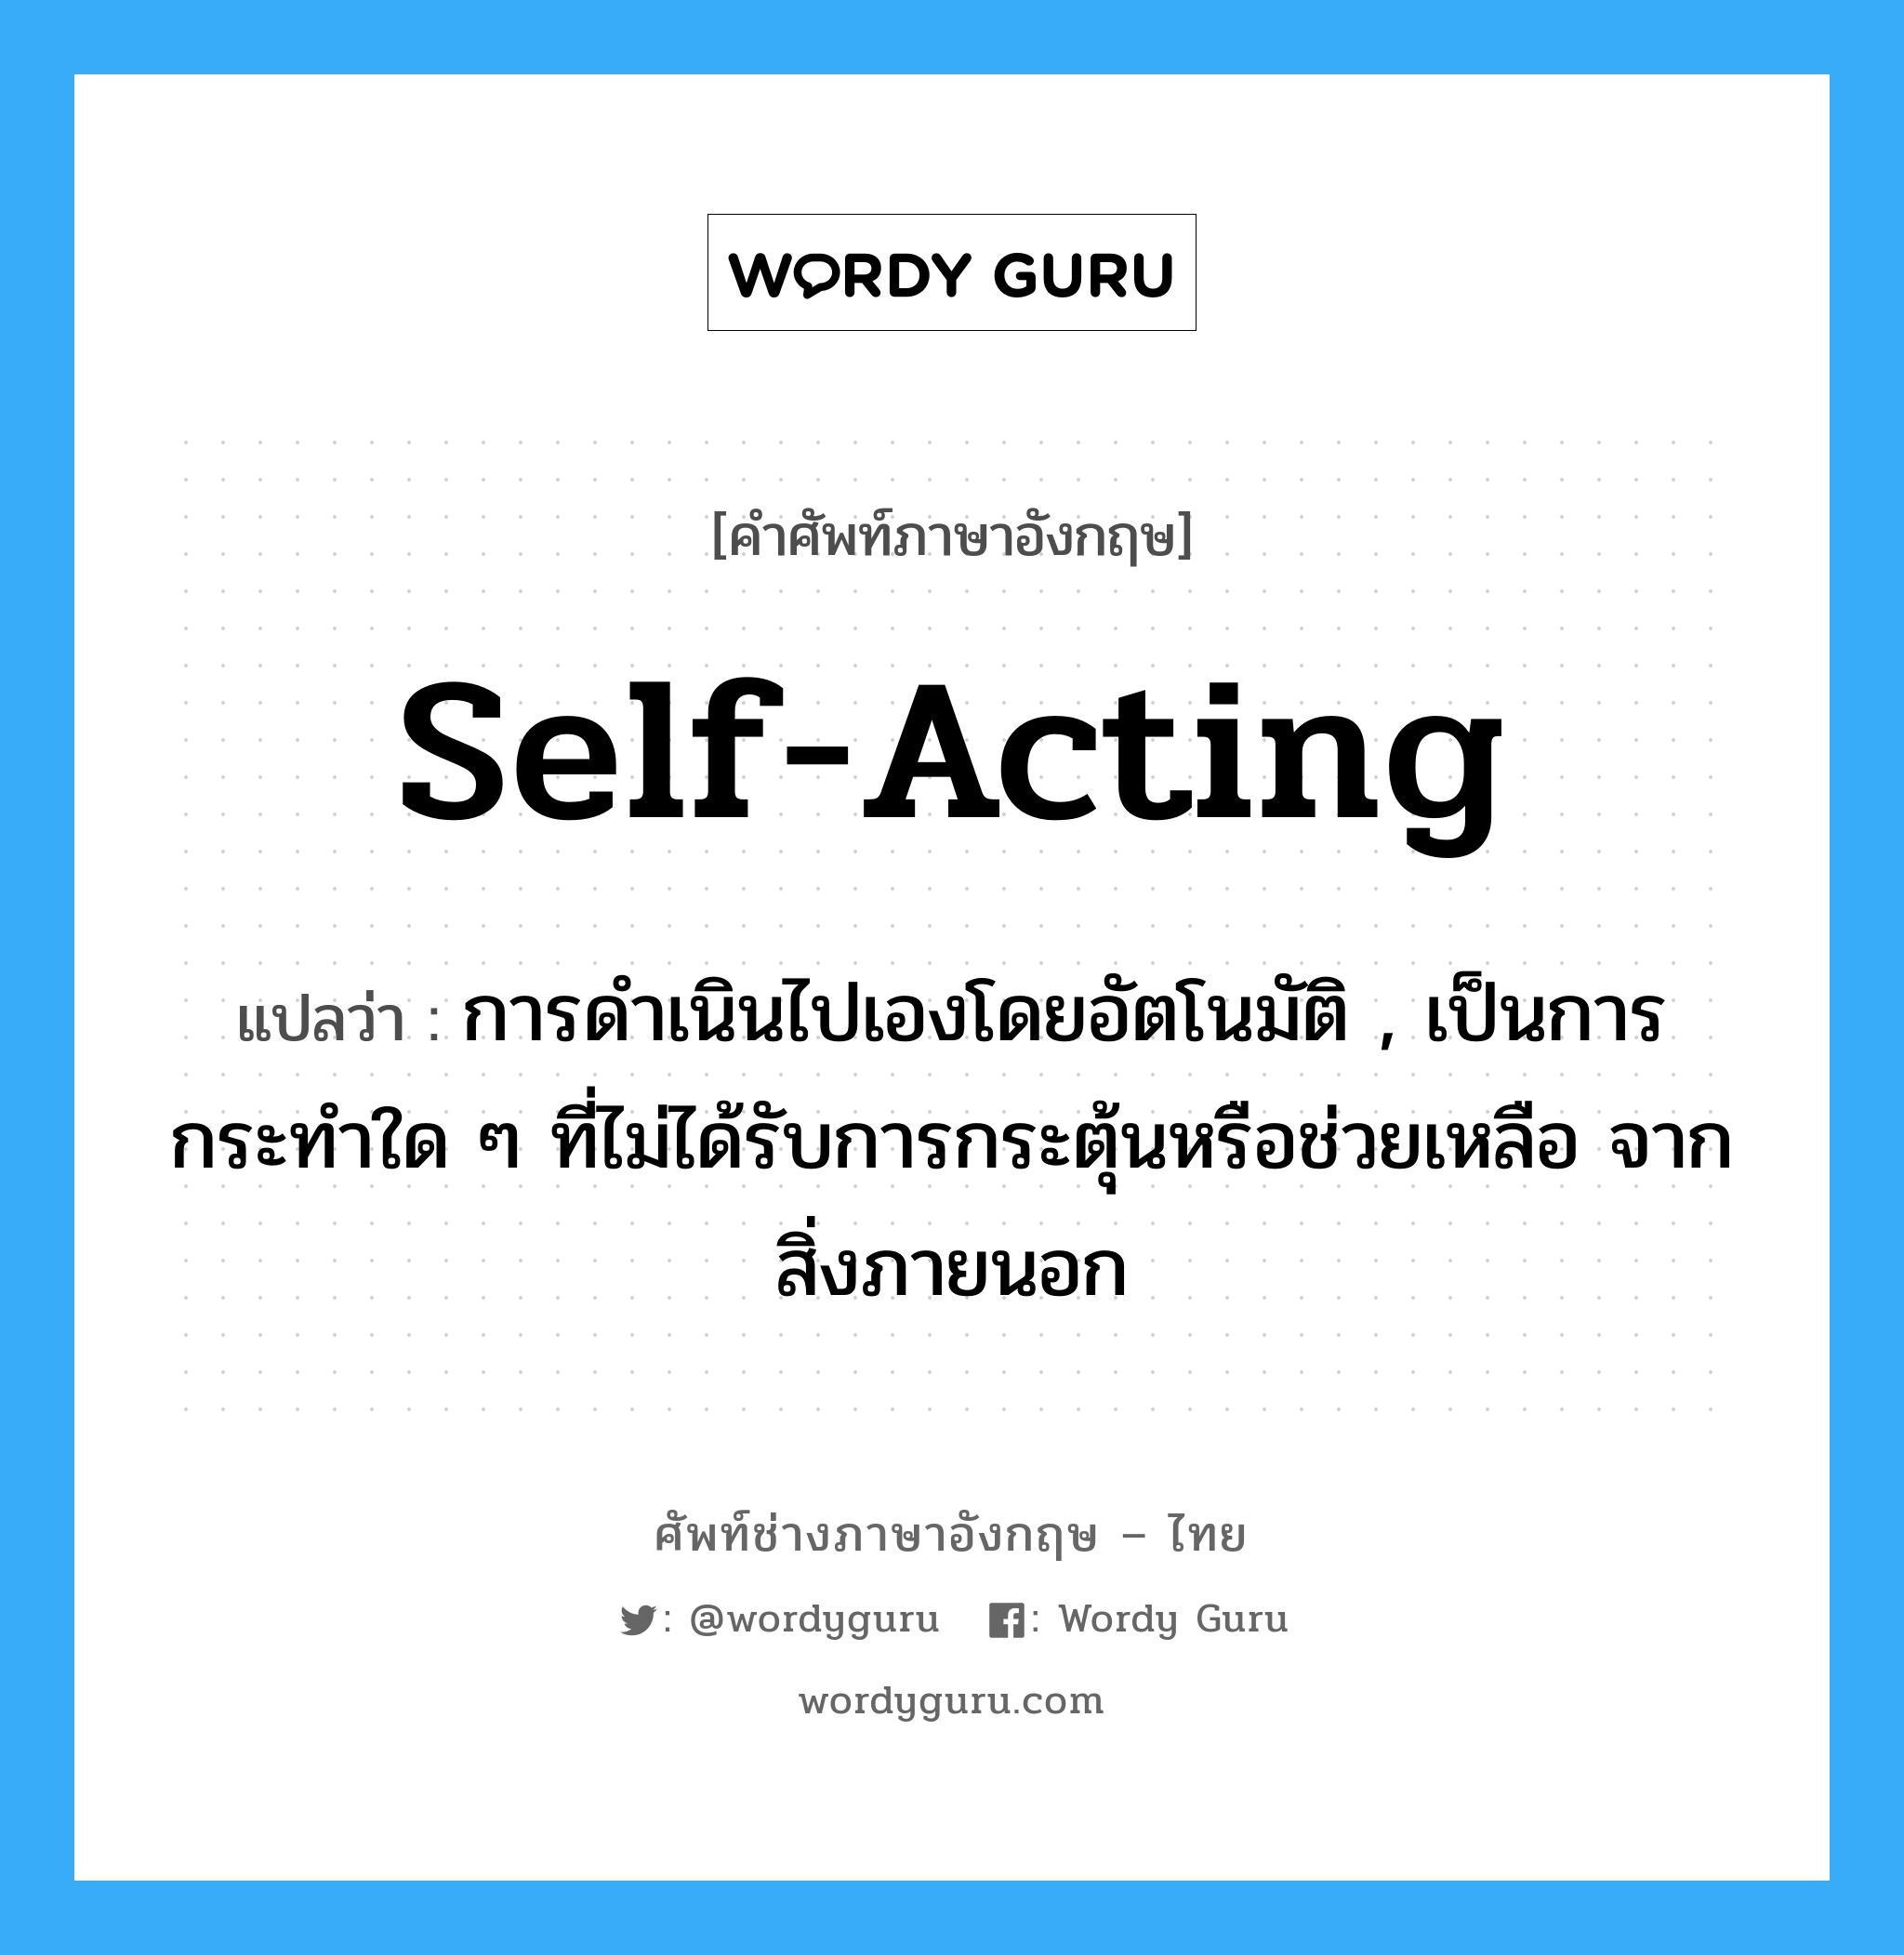 self-acting แปลว่า?, คำศัพท์ช่างภาษาอังกฤษ - ไทย self-acting คำศัพท์ภาษาอังกฤษ self-acting แปลว่า การดำเนินไปเองโดยอัตโนมัติ , เป็นการกระทำใด ๆ ที่ไม่ได้รับการกระตุ้นหรือช่วยเหลือ จากสิ่งภายนอก